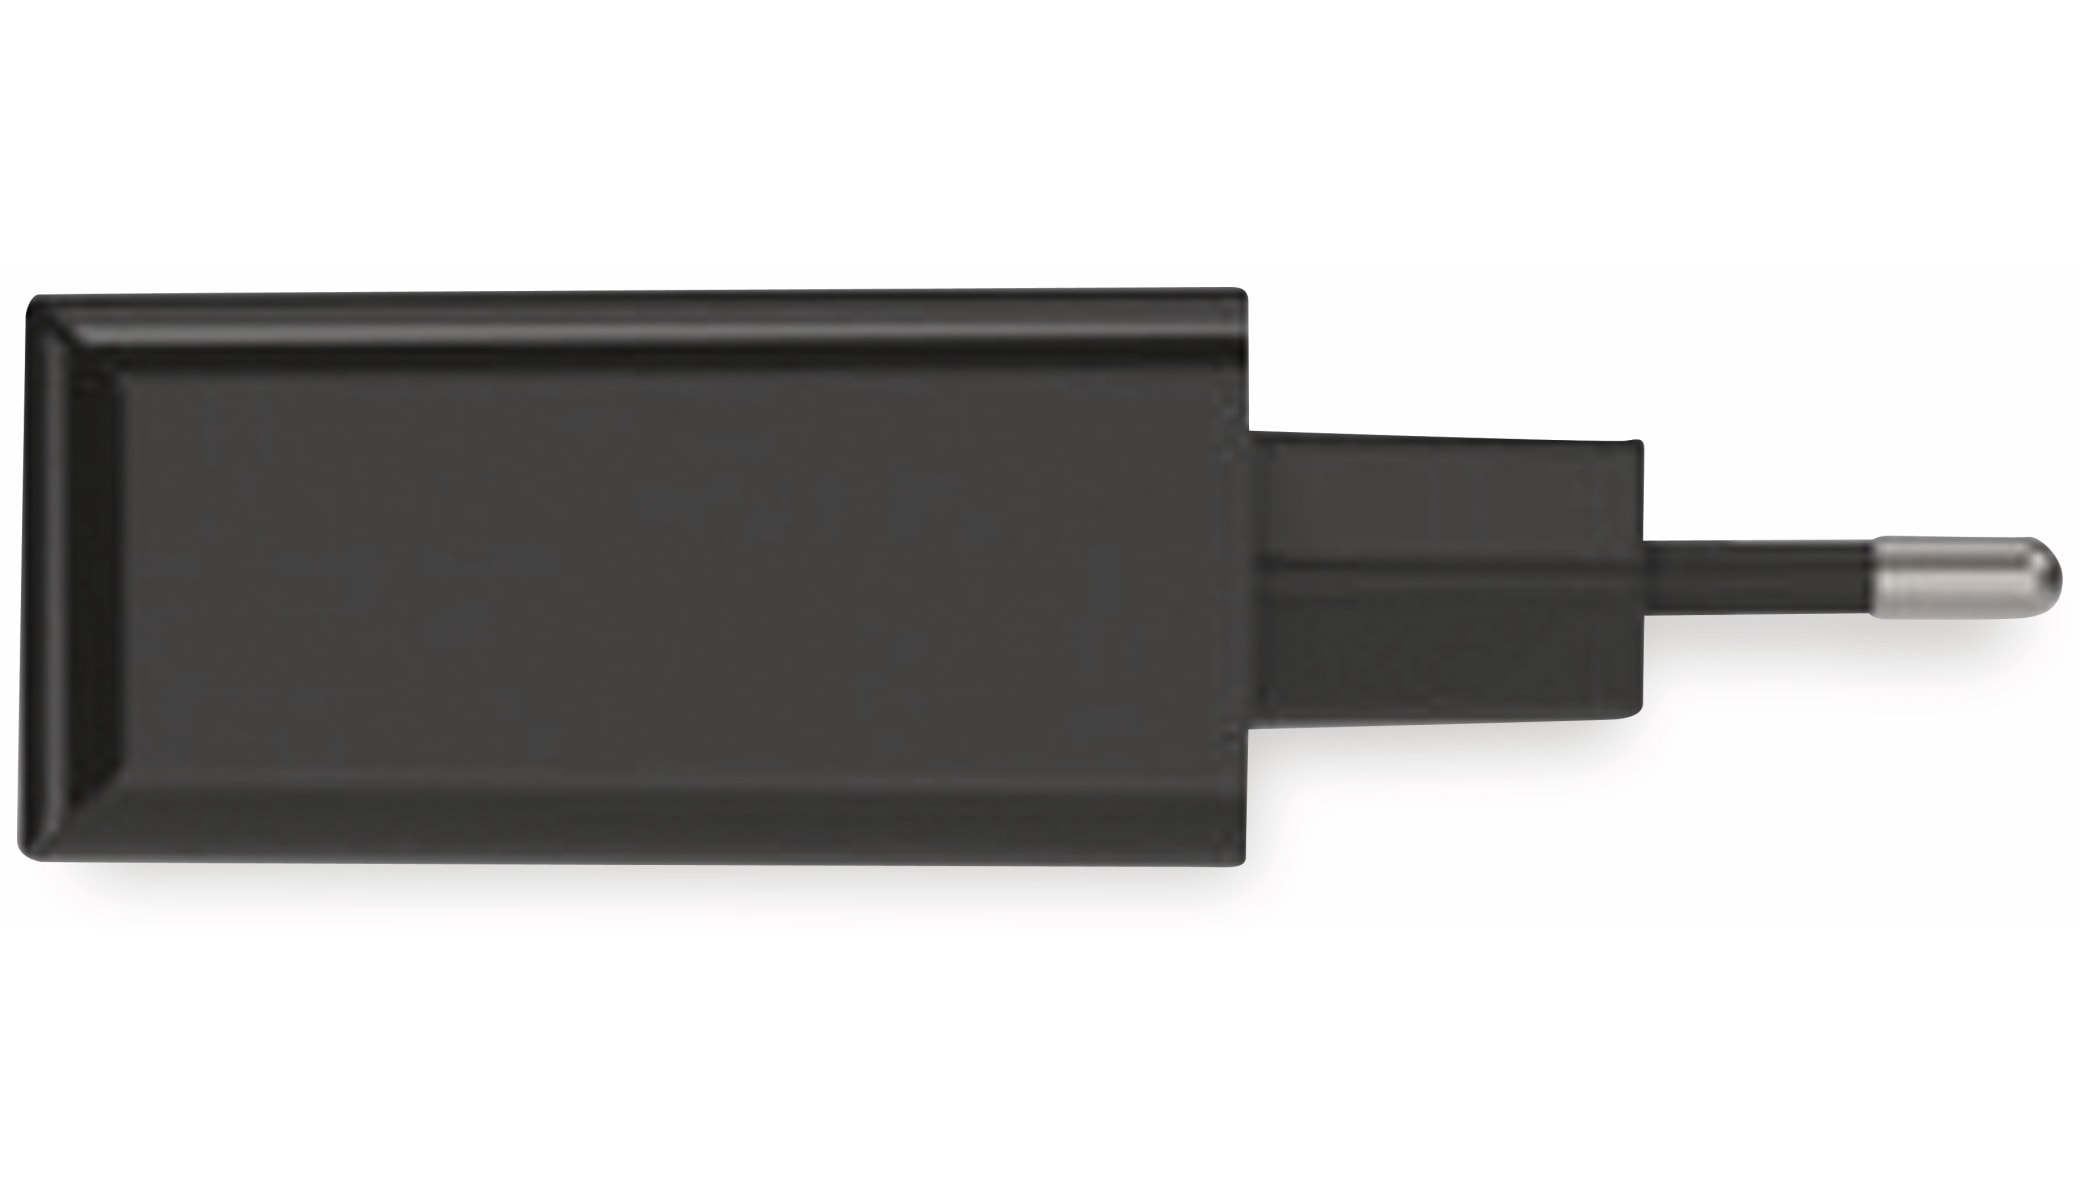 ANSMANN USB-Ladegerät HC430, 30 W, 5 V, 3 A, 4-Port, schwarz